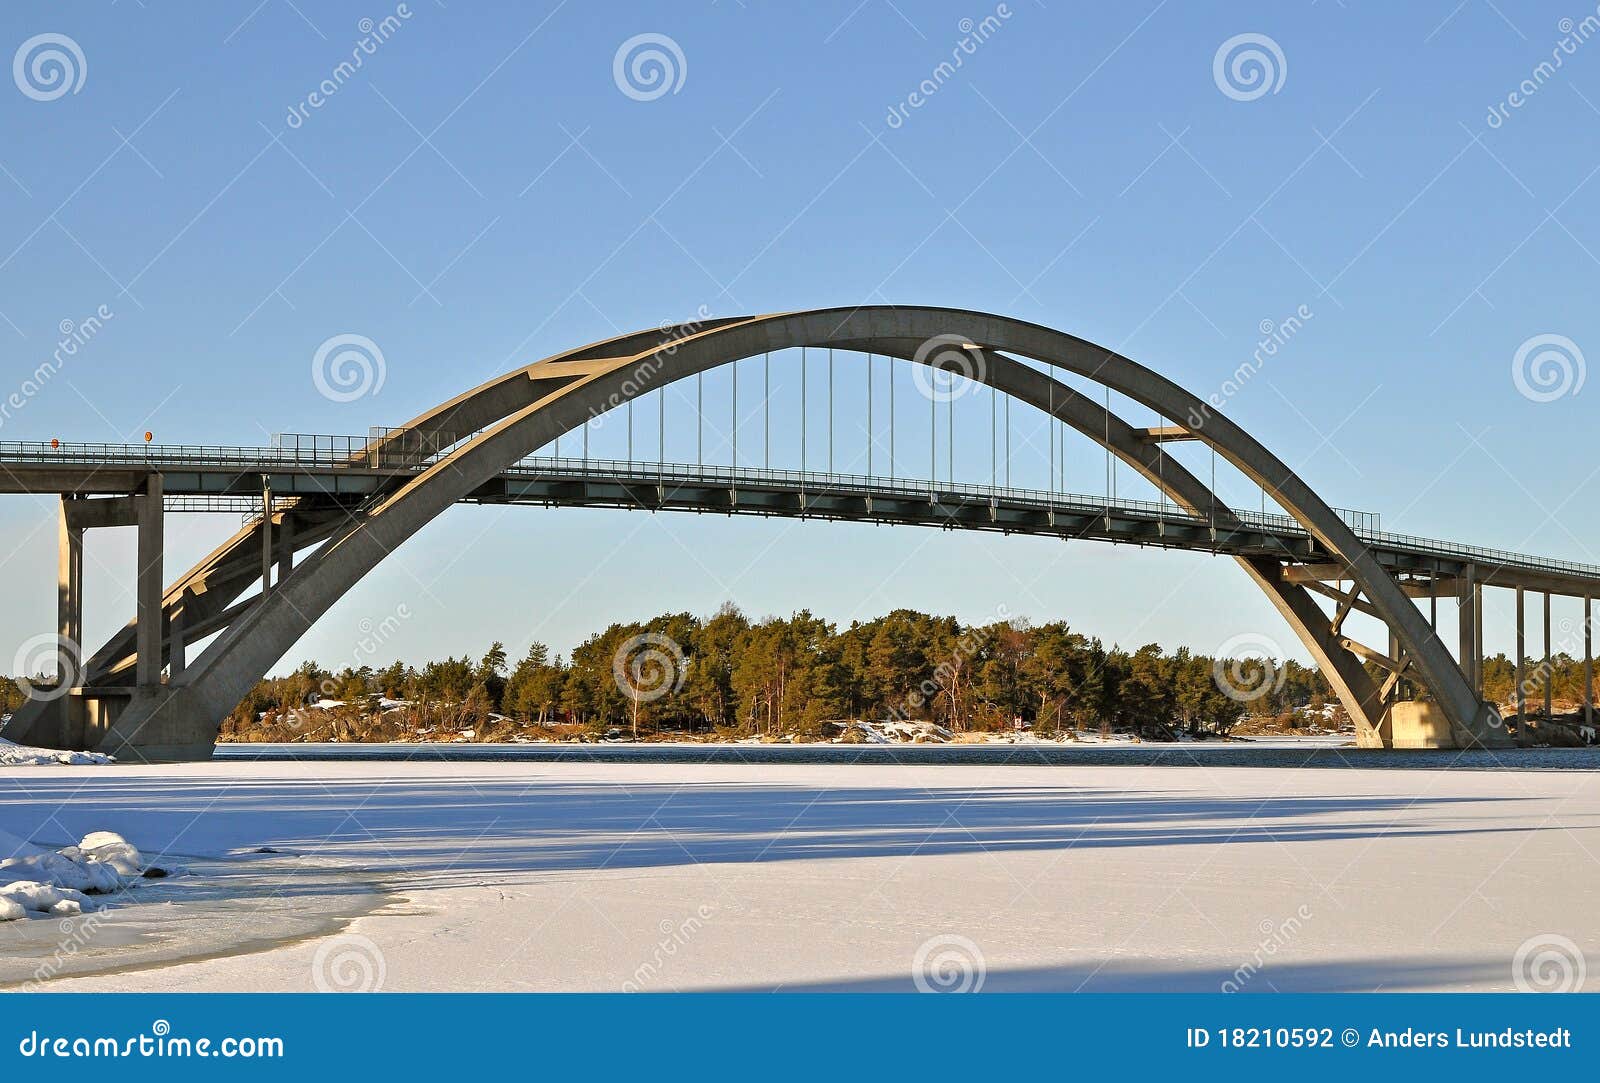 concrete bridge in archipelago